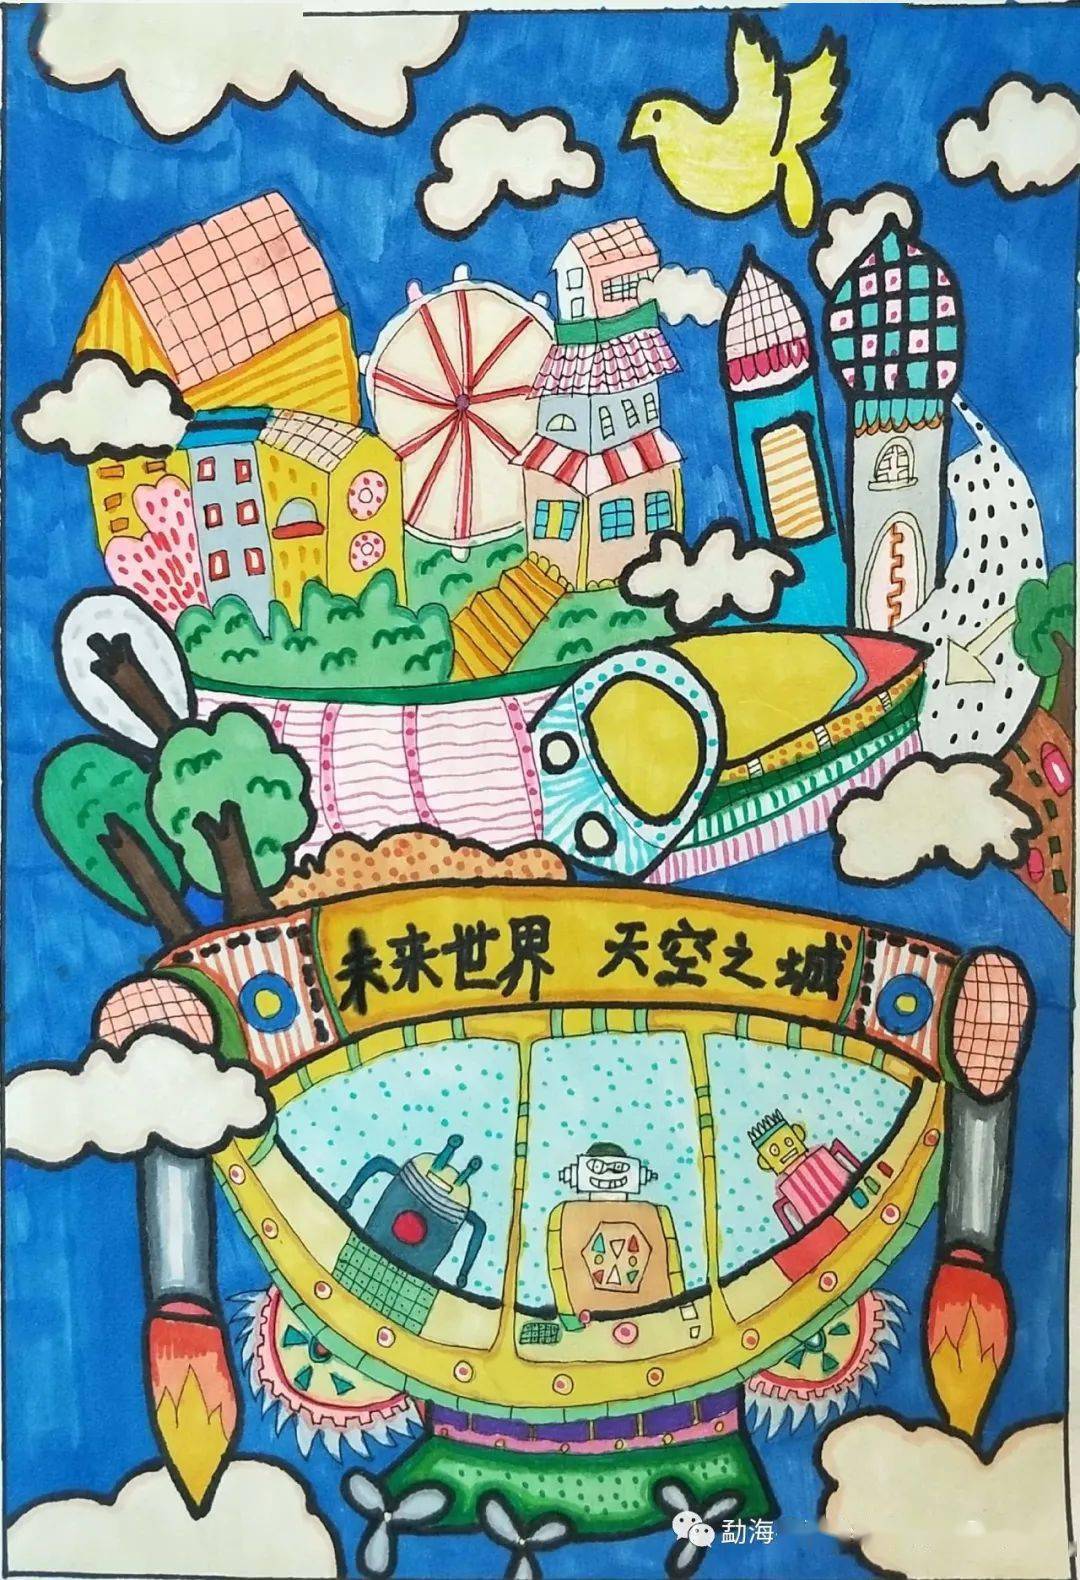 美丽中国我是行动者勐海县小学生生态环境保护绘画征集比赛获奖作品展